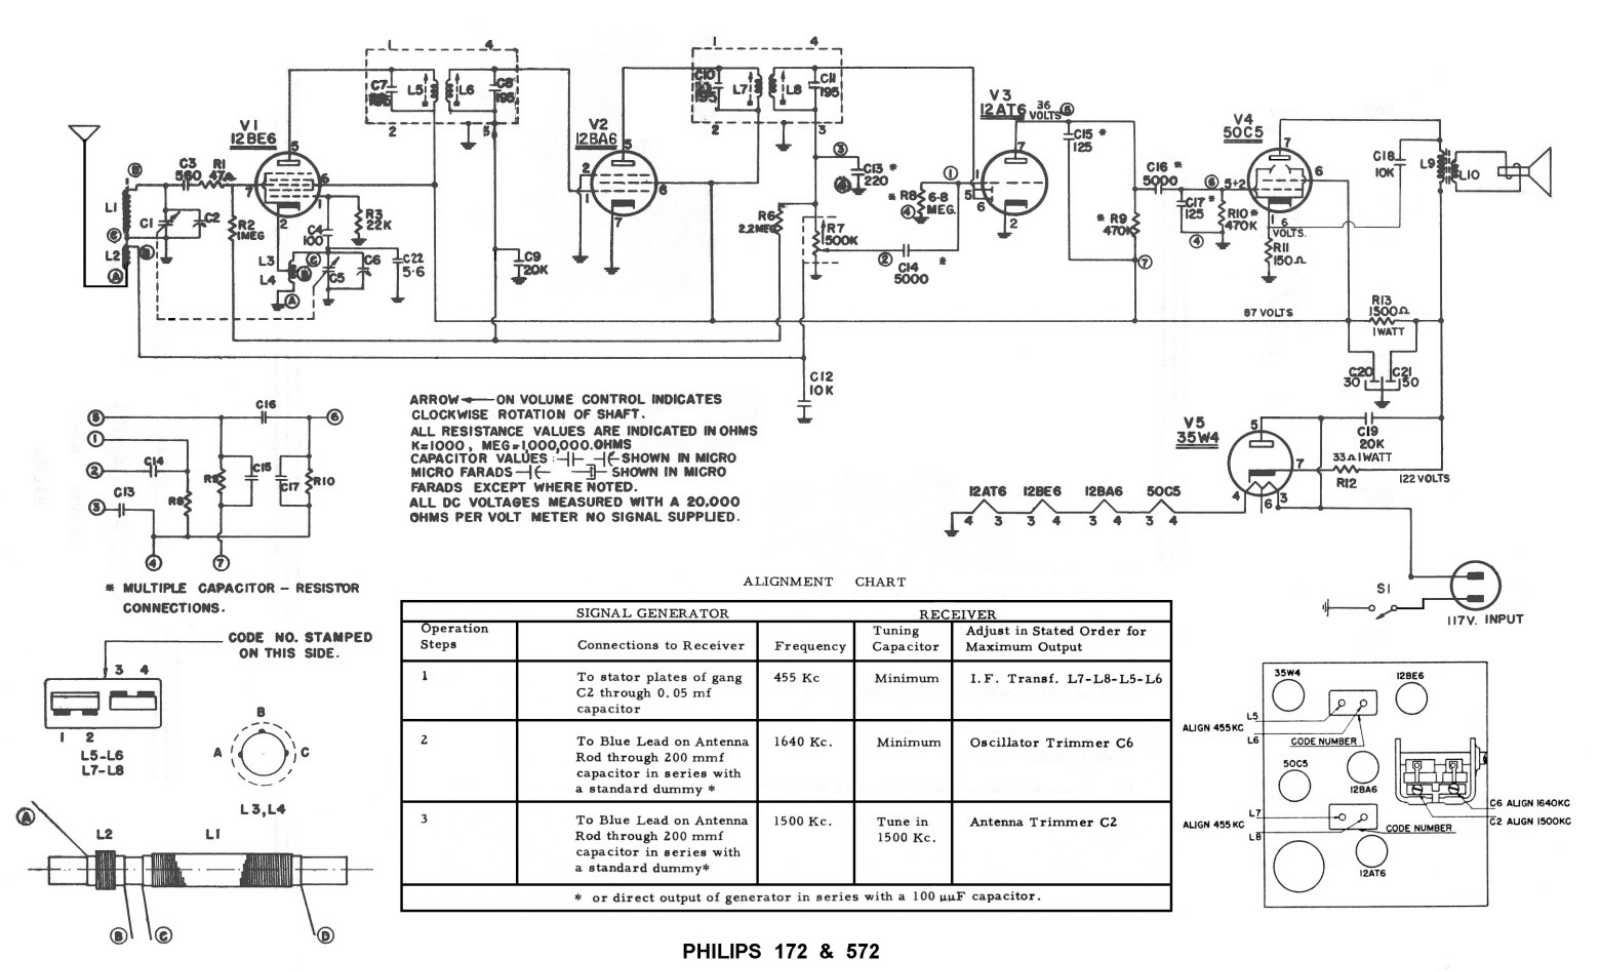 Philips 172, 572 schematic